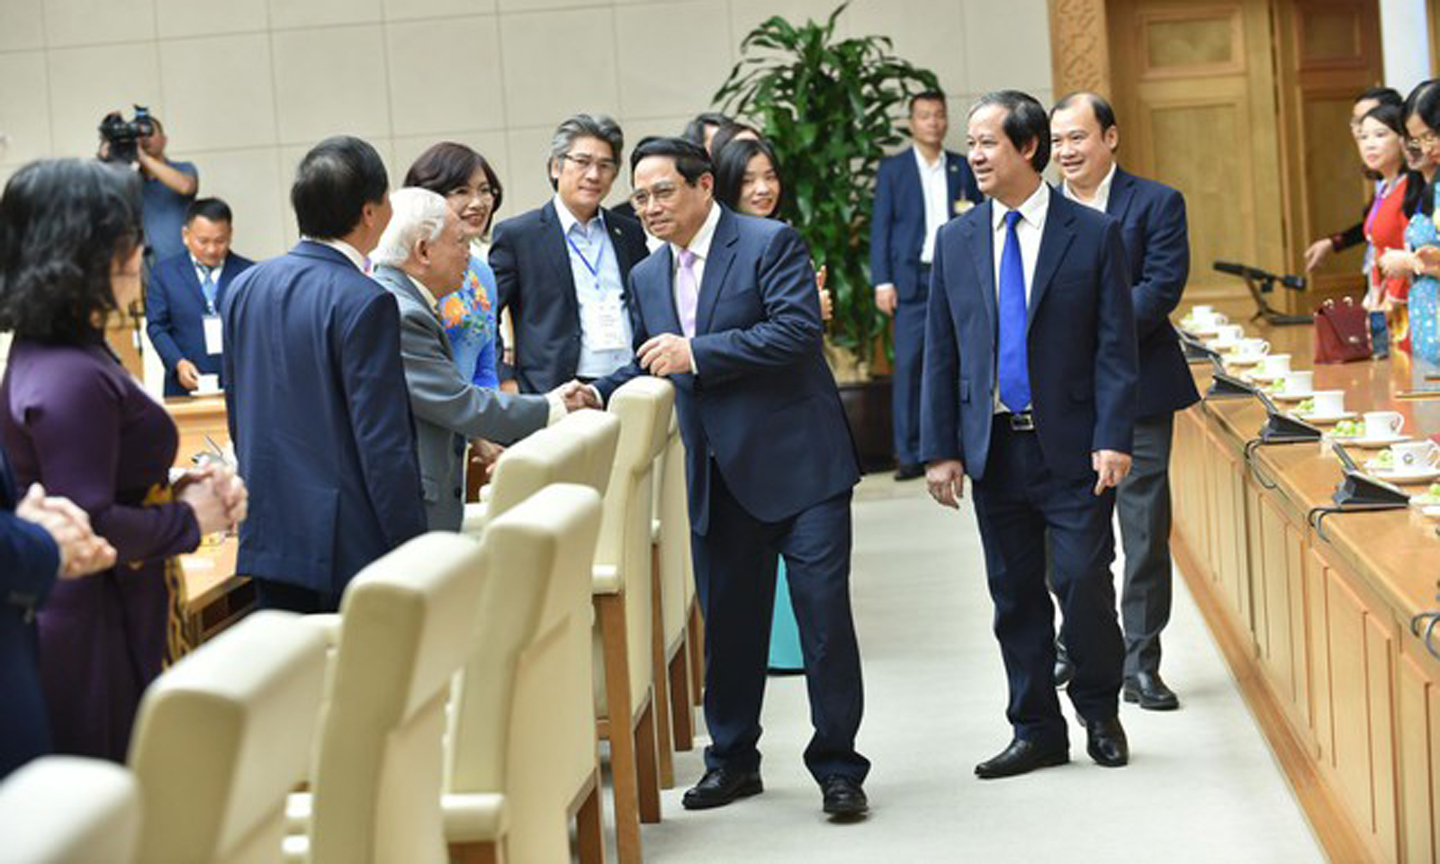 Các nhà giáo vui mừng được gặp Thủ tướng Chính phủ - Ảnh: VGP/Quang Thương